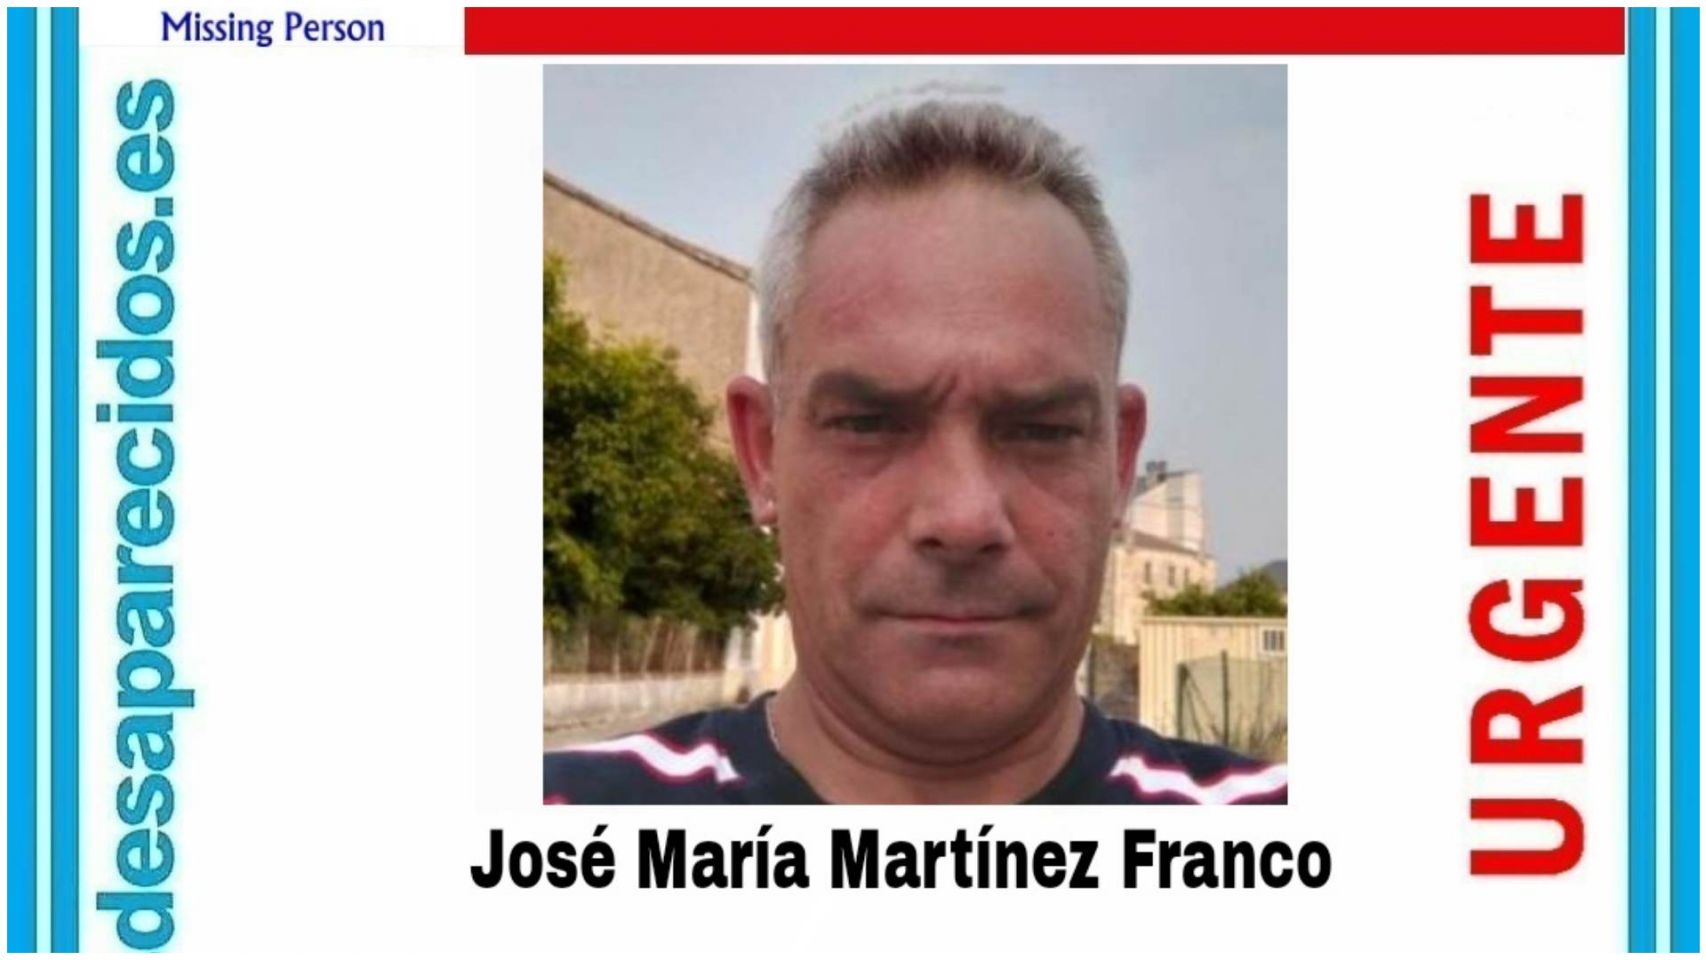 José María Martínez Franco desapareció el 10 de marzo